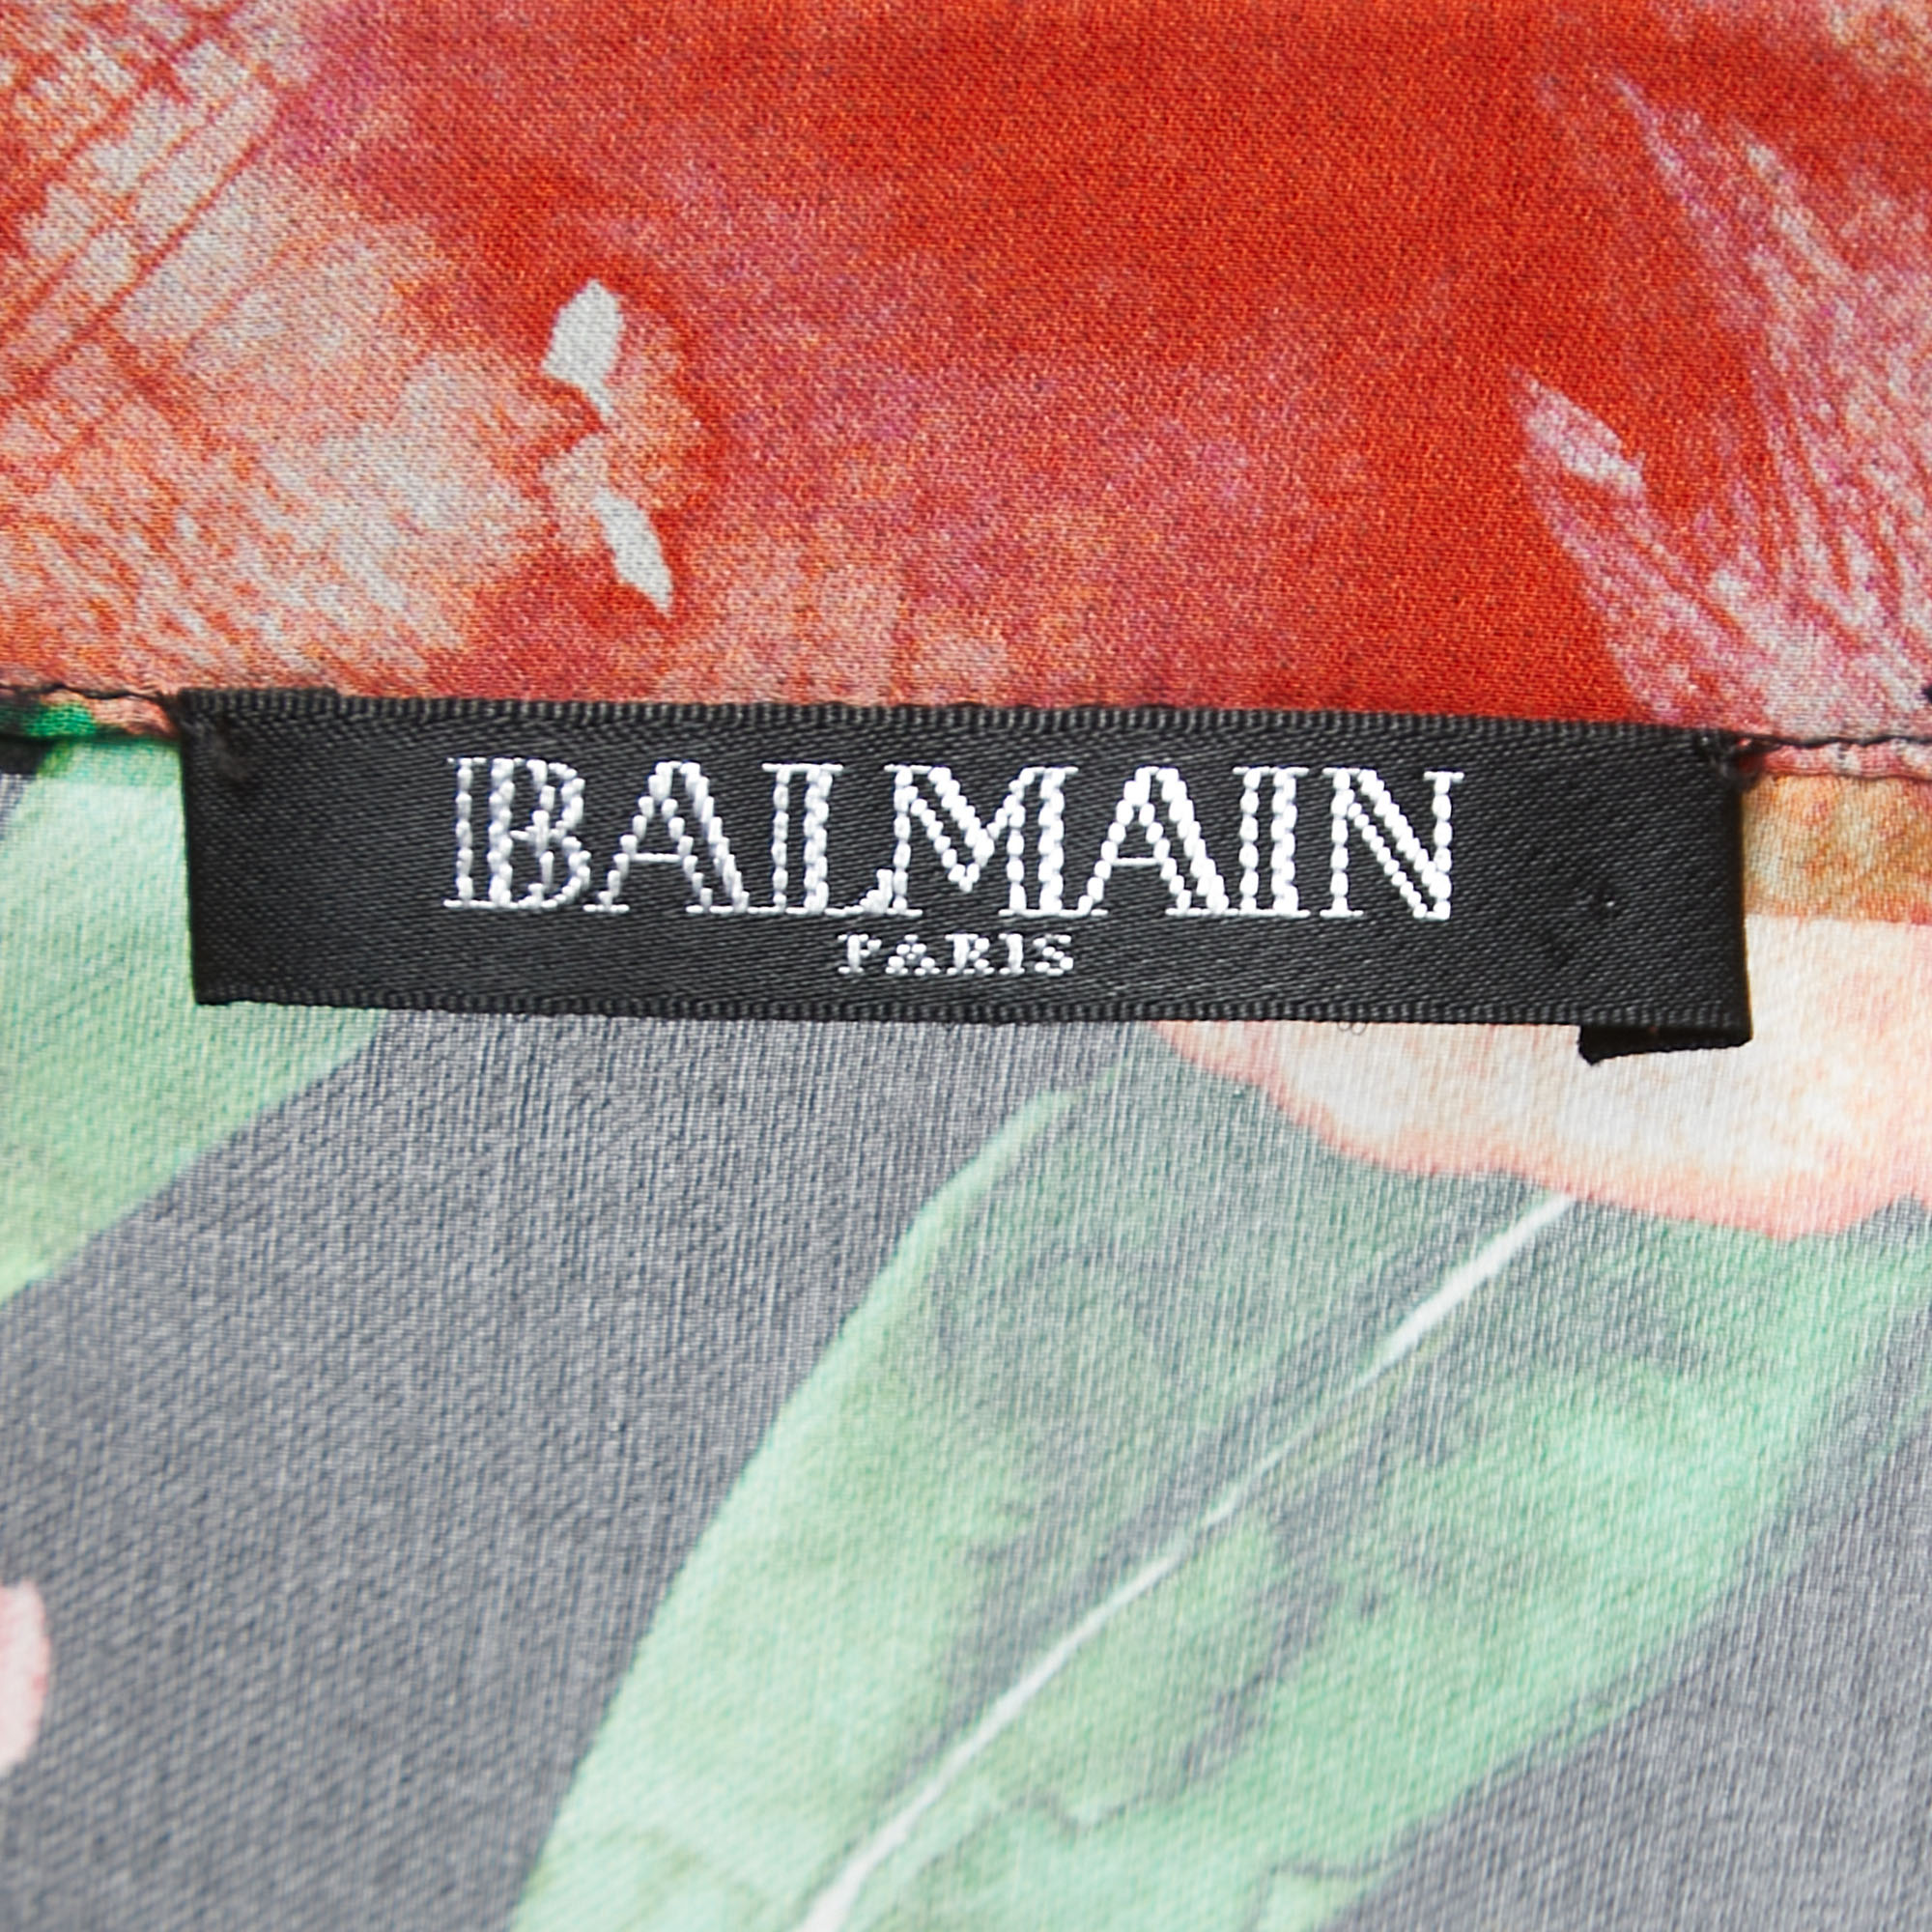 Balmain Multicolor Floral Print Silk Button Front Shirt Blouse M